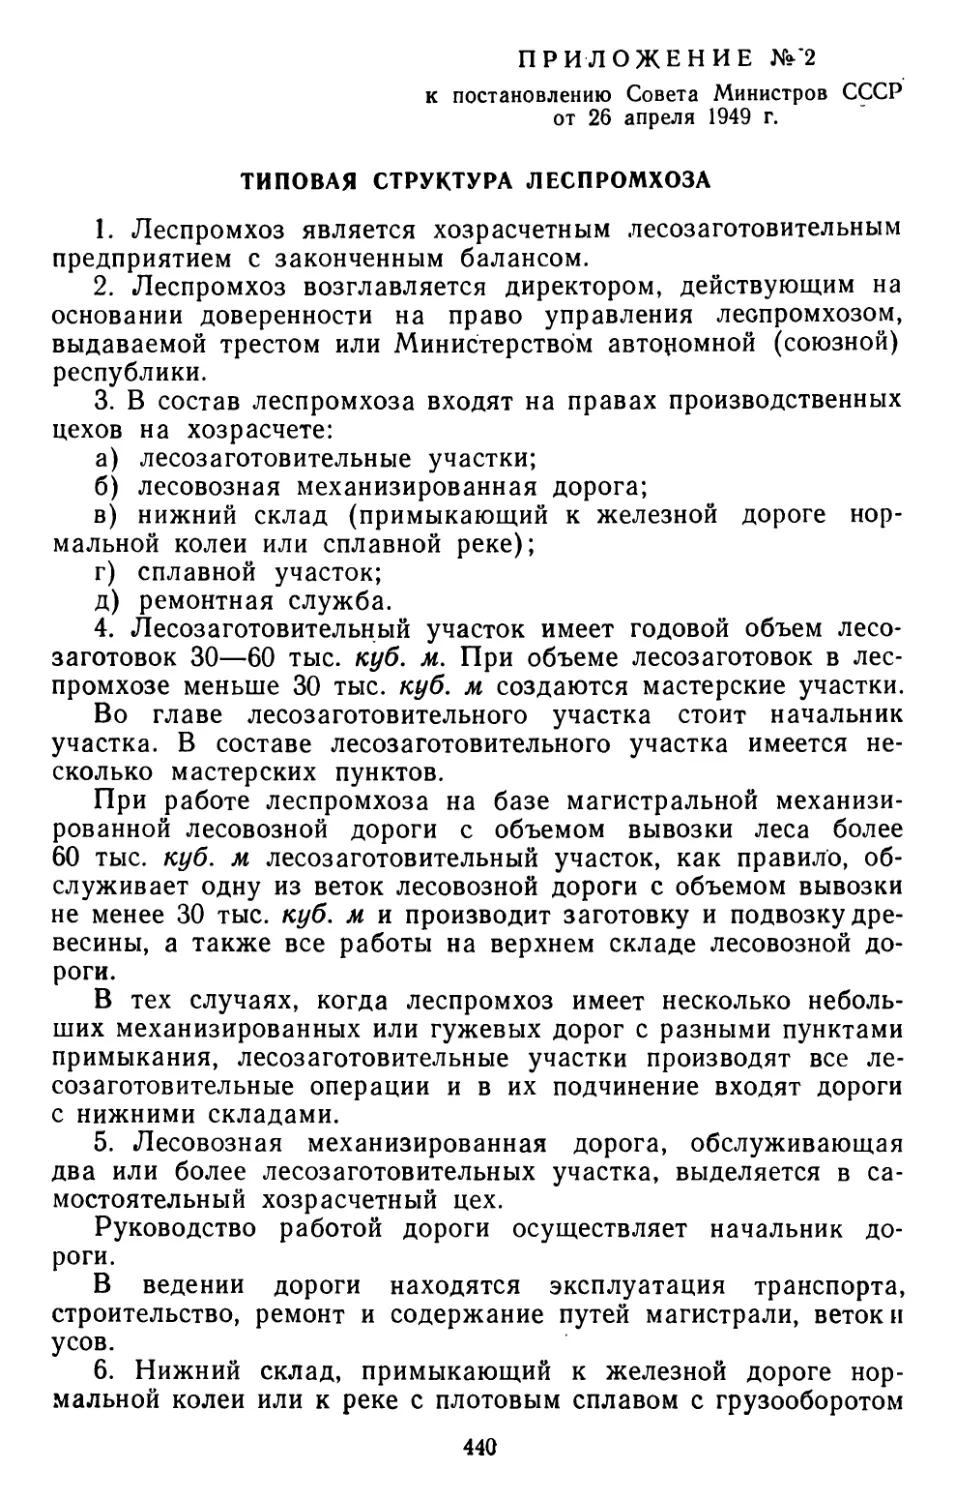 Типовая структура леспромхоза. Приложение № 2 к постановлению Совета Министров СССР от 26 апреля 1949 г